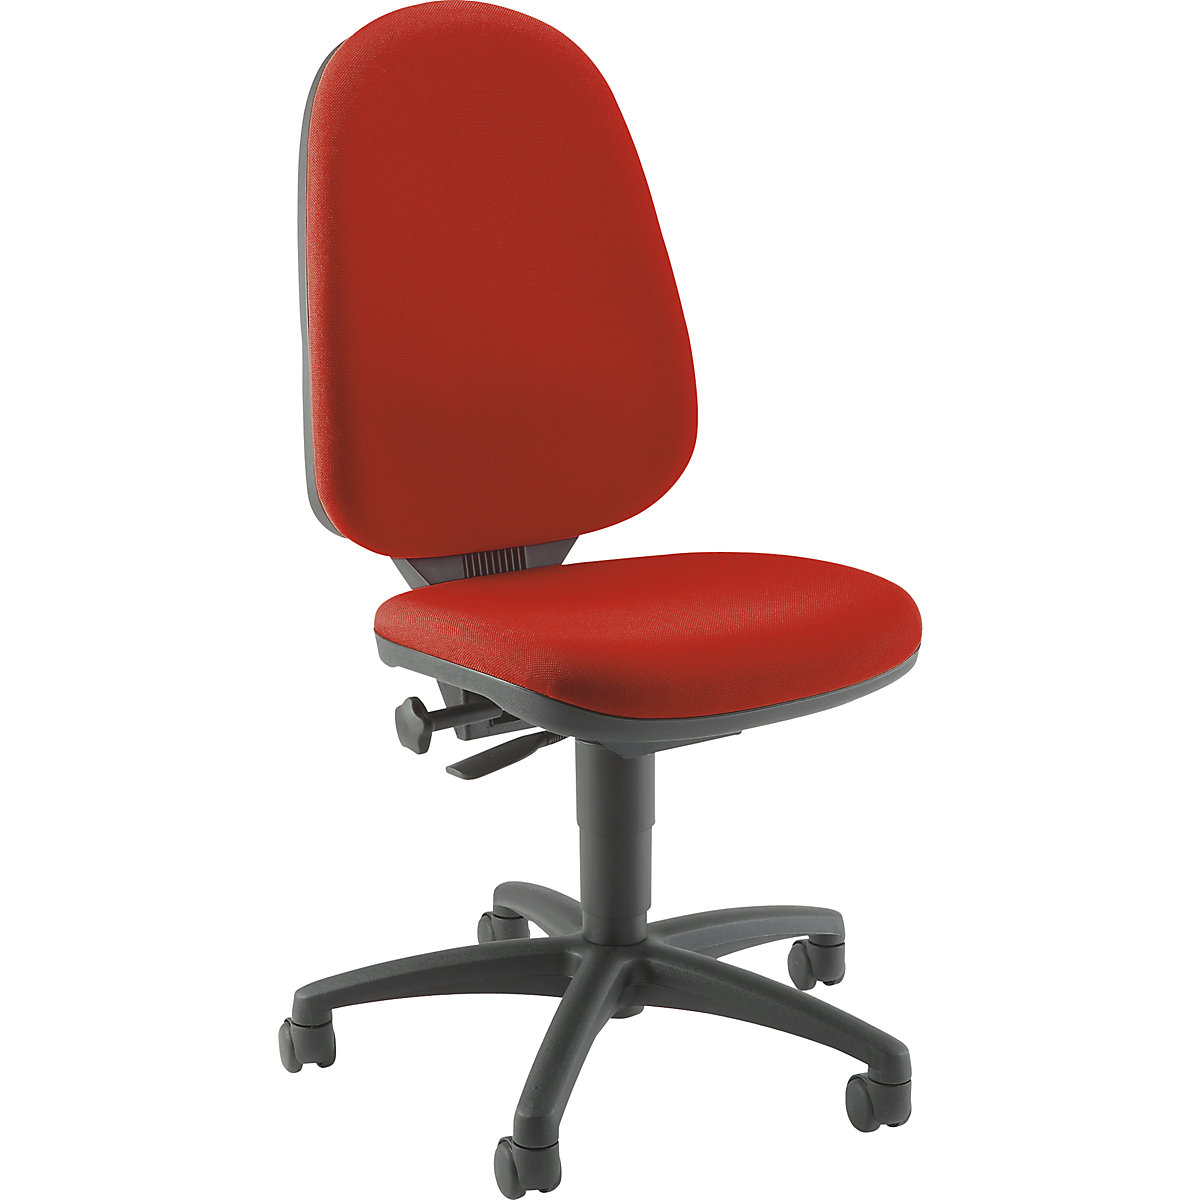 Standard swivel chair – Topstar